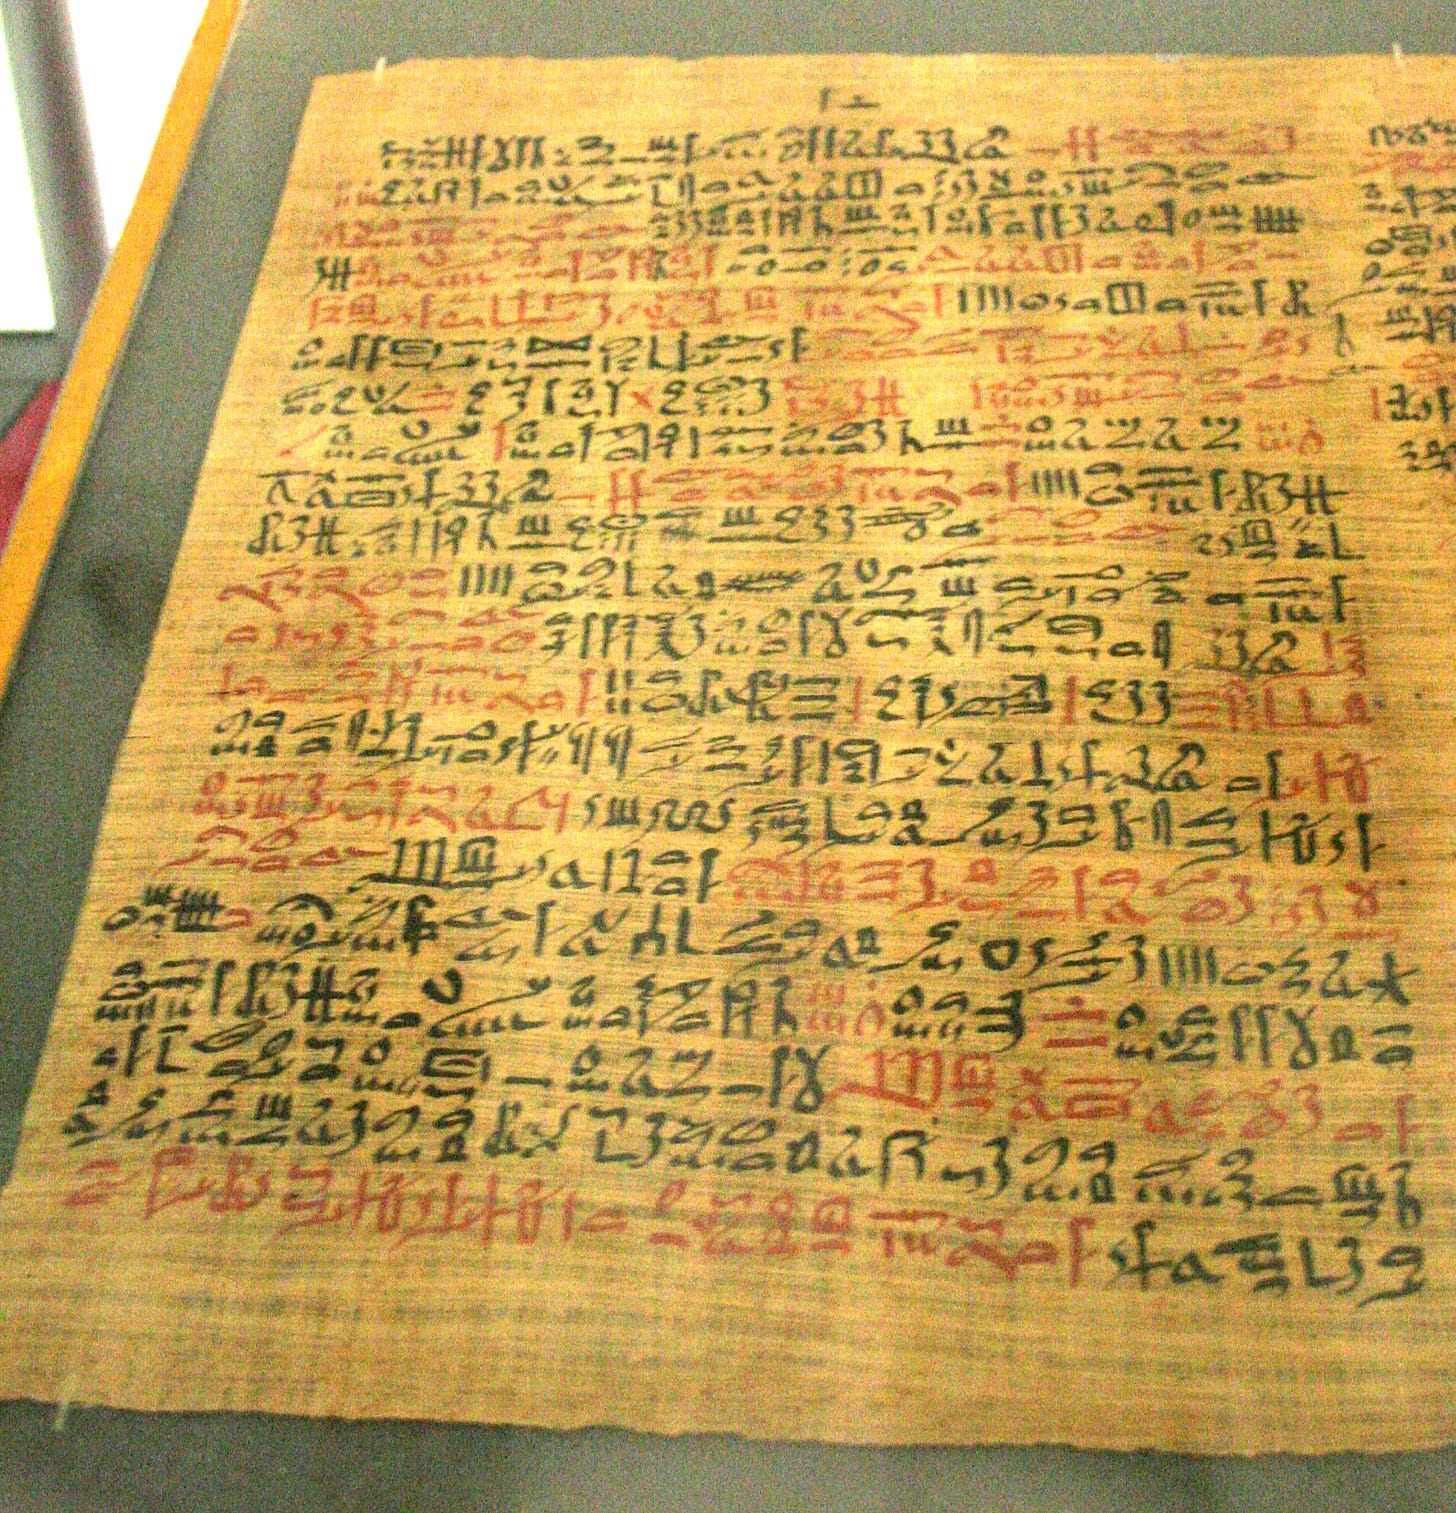 Ebers Papyrus - Wikipedia